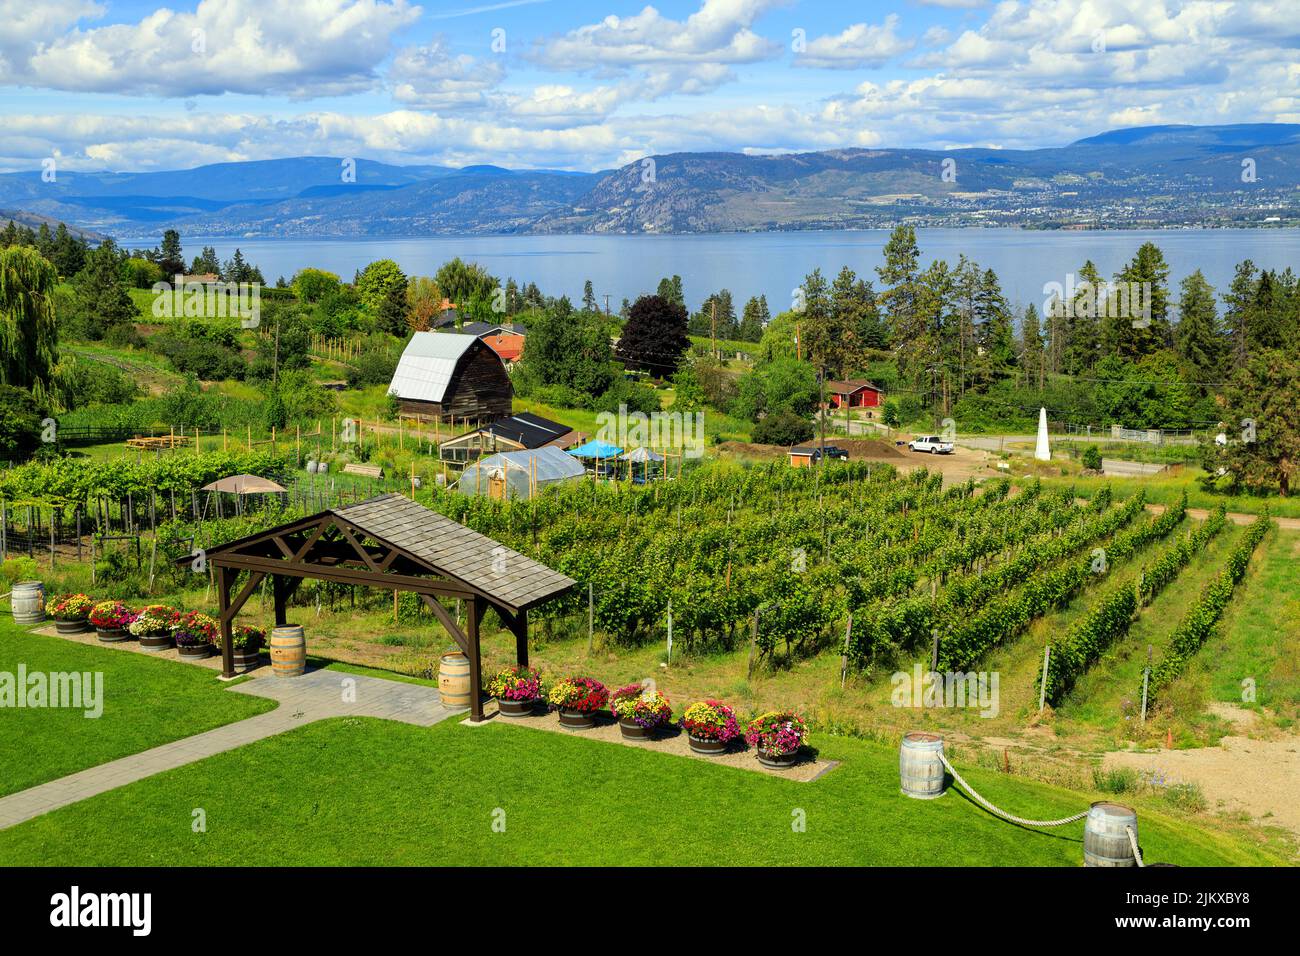 Vista de un viñedo agrícola ubicado en el Okanagan Valley en Kelowna, British Columbia, Canadá. Foto de stock